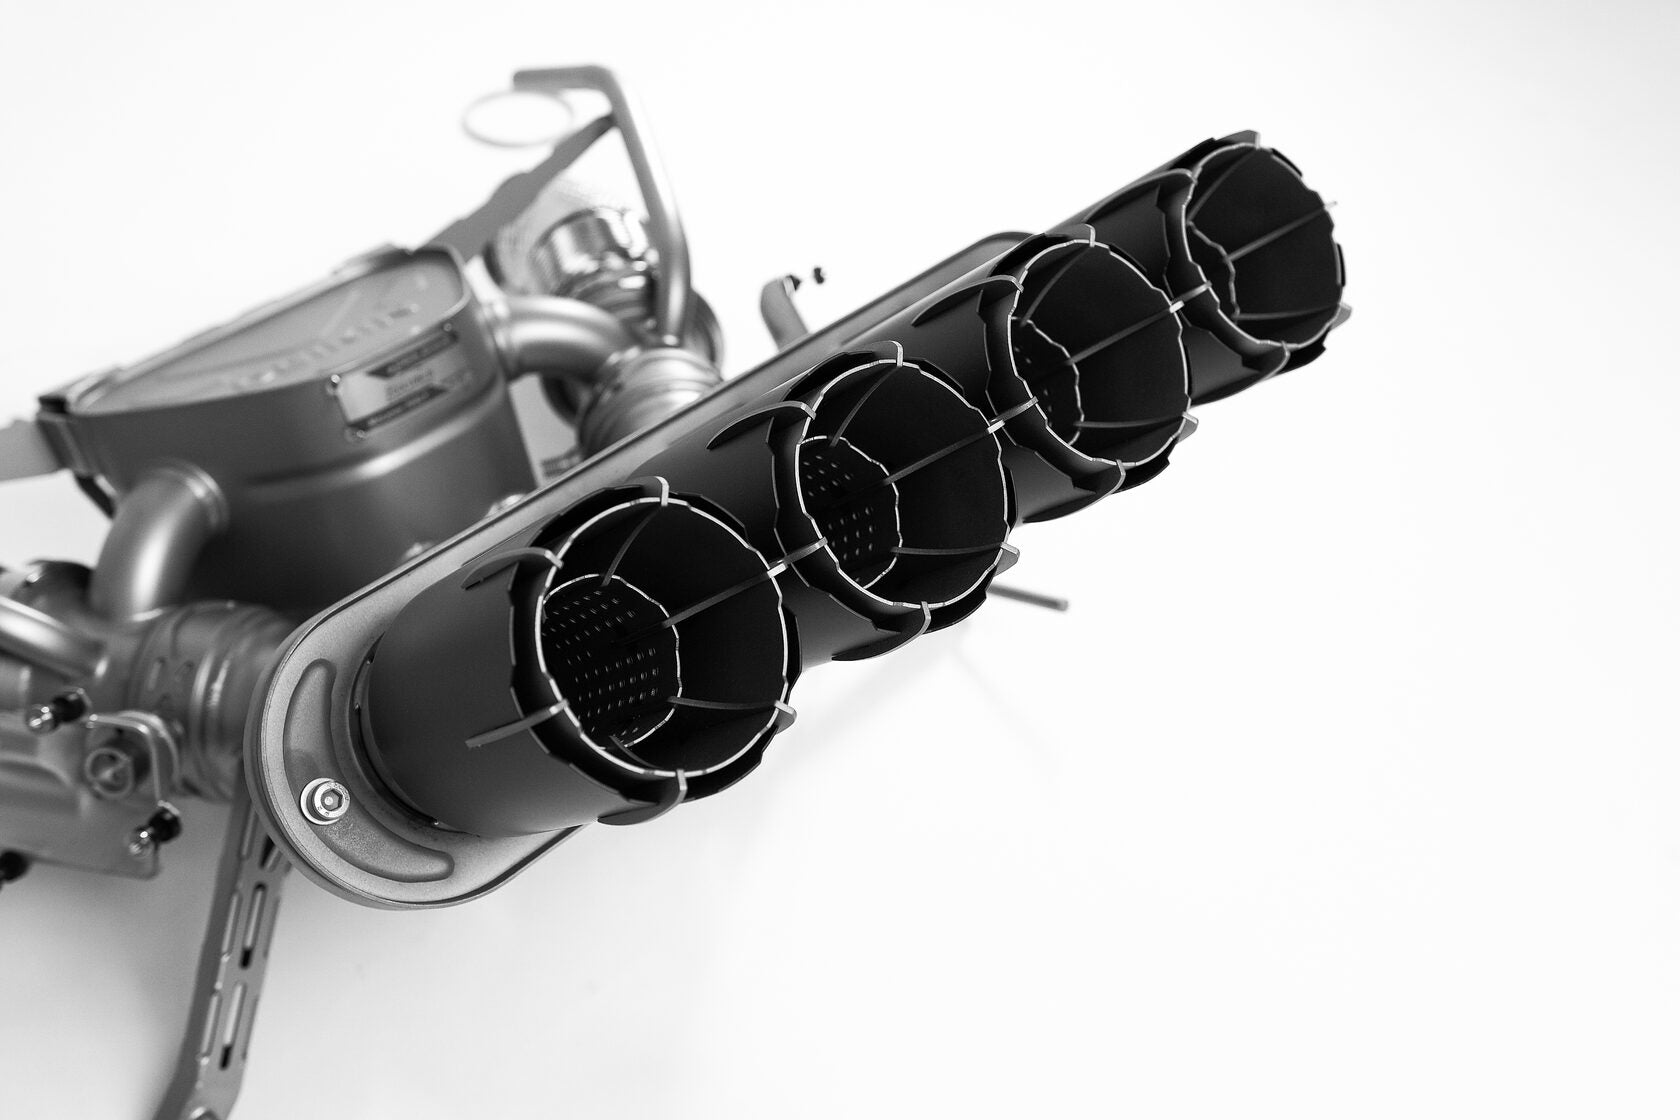 DEIKIN 10-McLaren.765LT-ES-Ti-06 Exhaust system Titan for McLaren 765LT включая даунпайп с thermal insulation HeatShield Black Ceramic Photo-2 